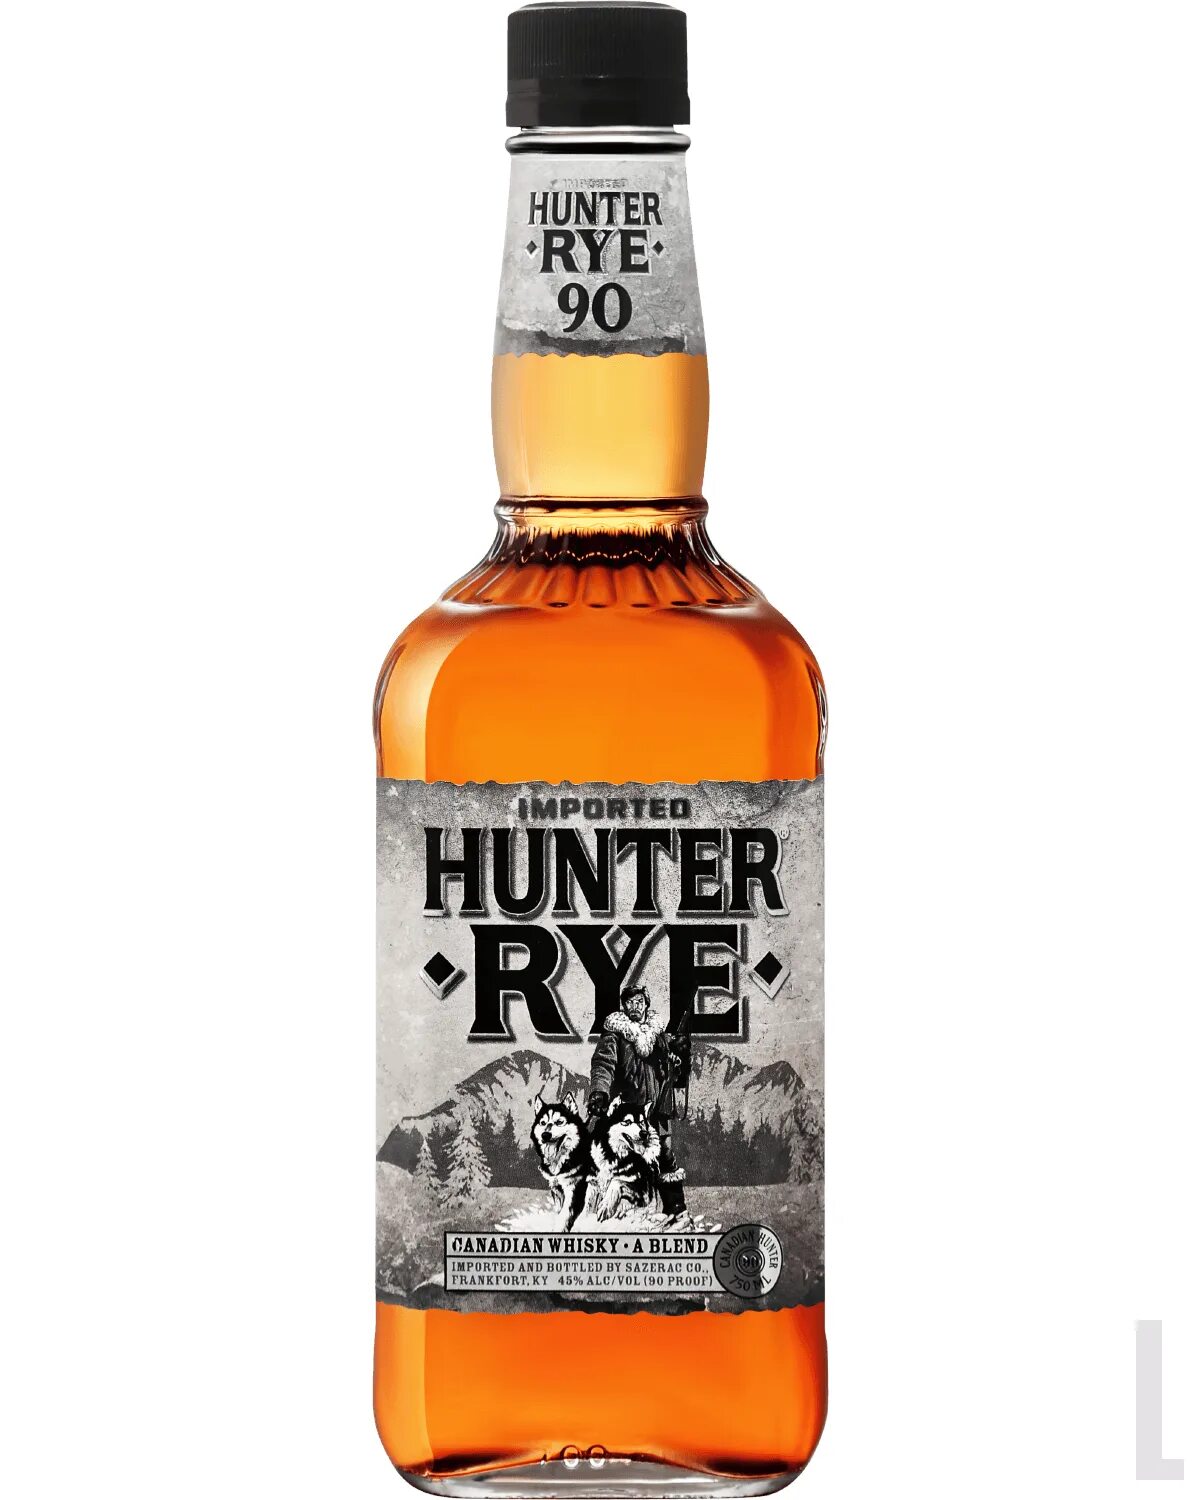 Виски Hunter Rye Canadian Whisky, 0.75 л. Виски Хантер рай. Купажированный виски "Канадиан Хантер" 0.75 л. 40%. Ханистер Банистер виски купажированный. Хантер 0 хантер